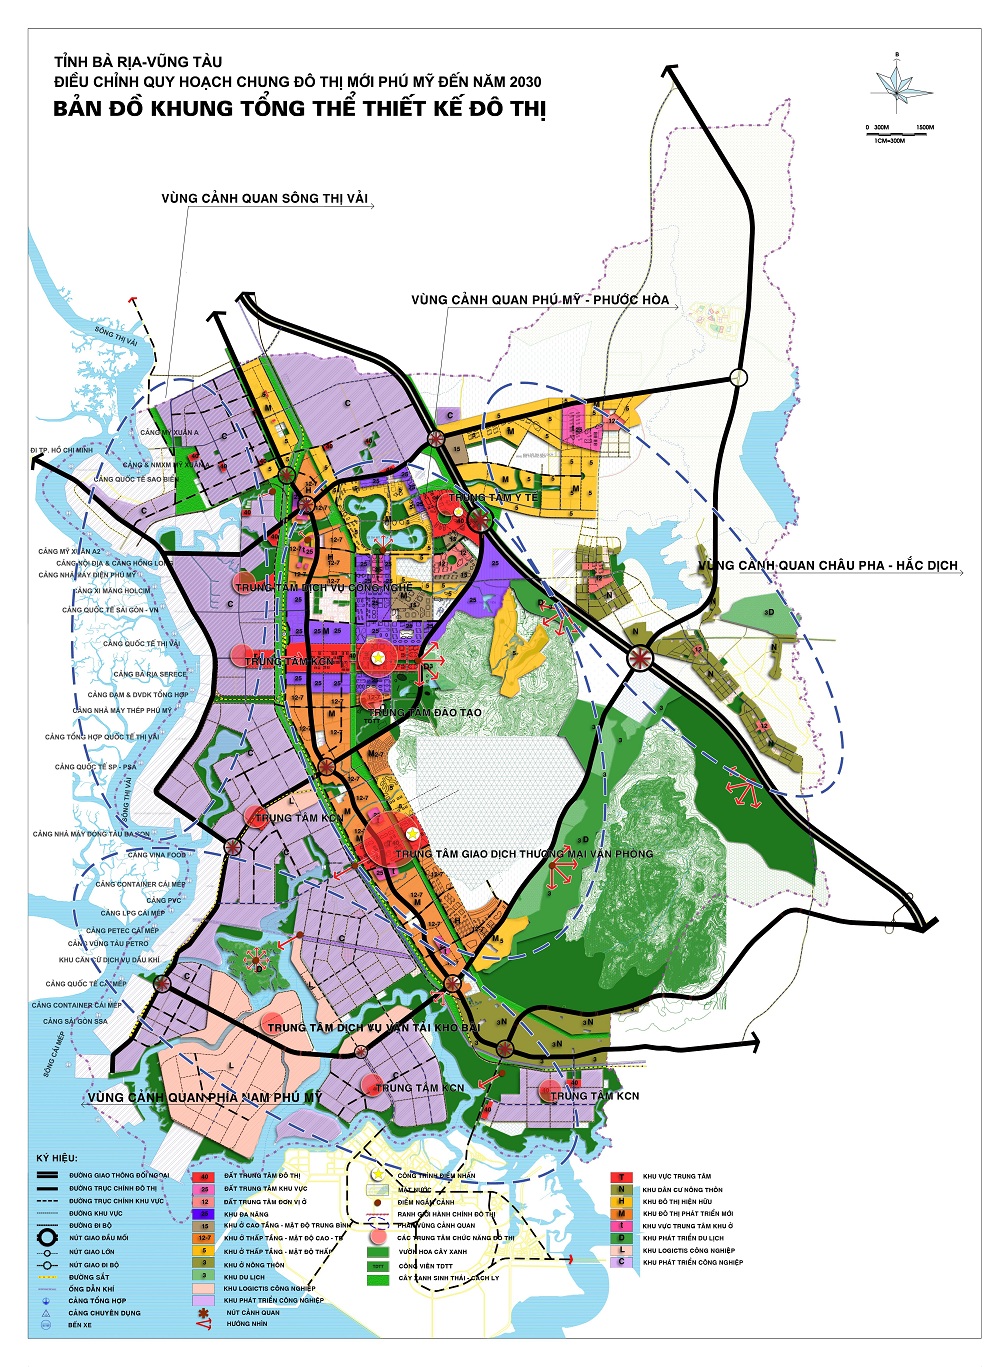 Bản đồ quy hoạch đô thị mới Phú Mỹ đến năm 2030